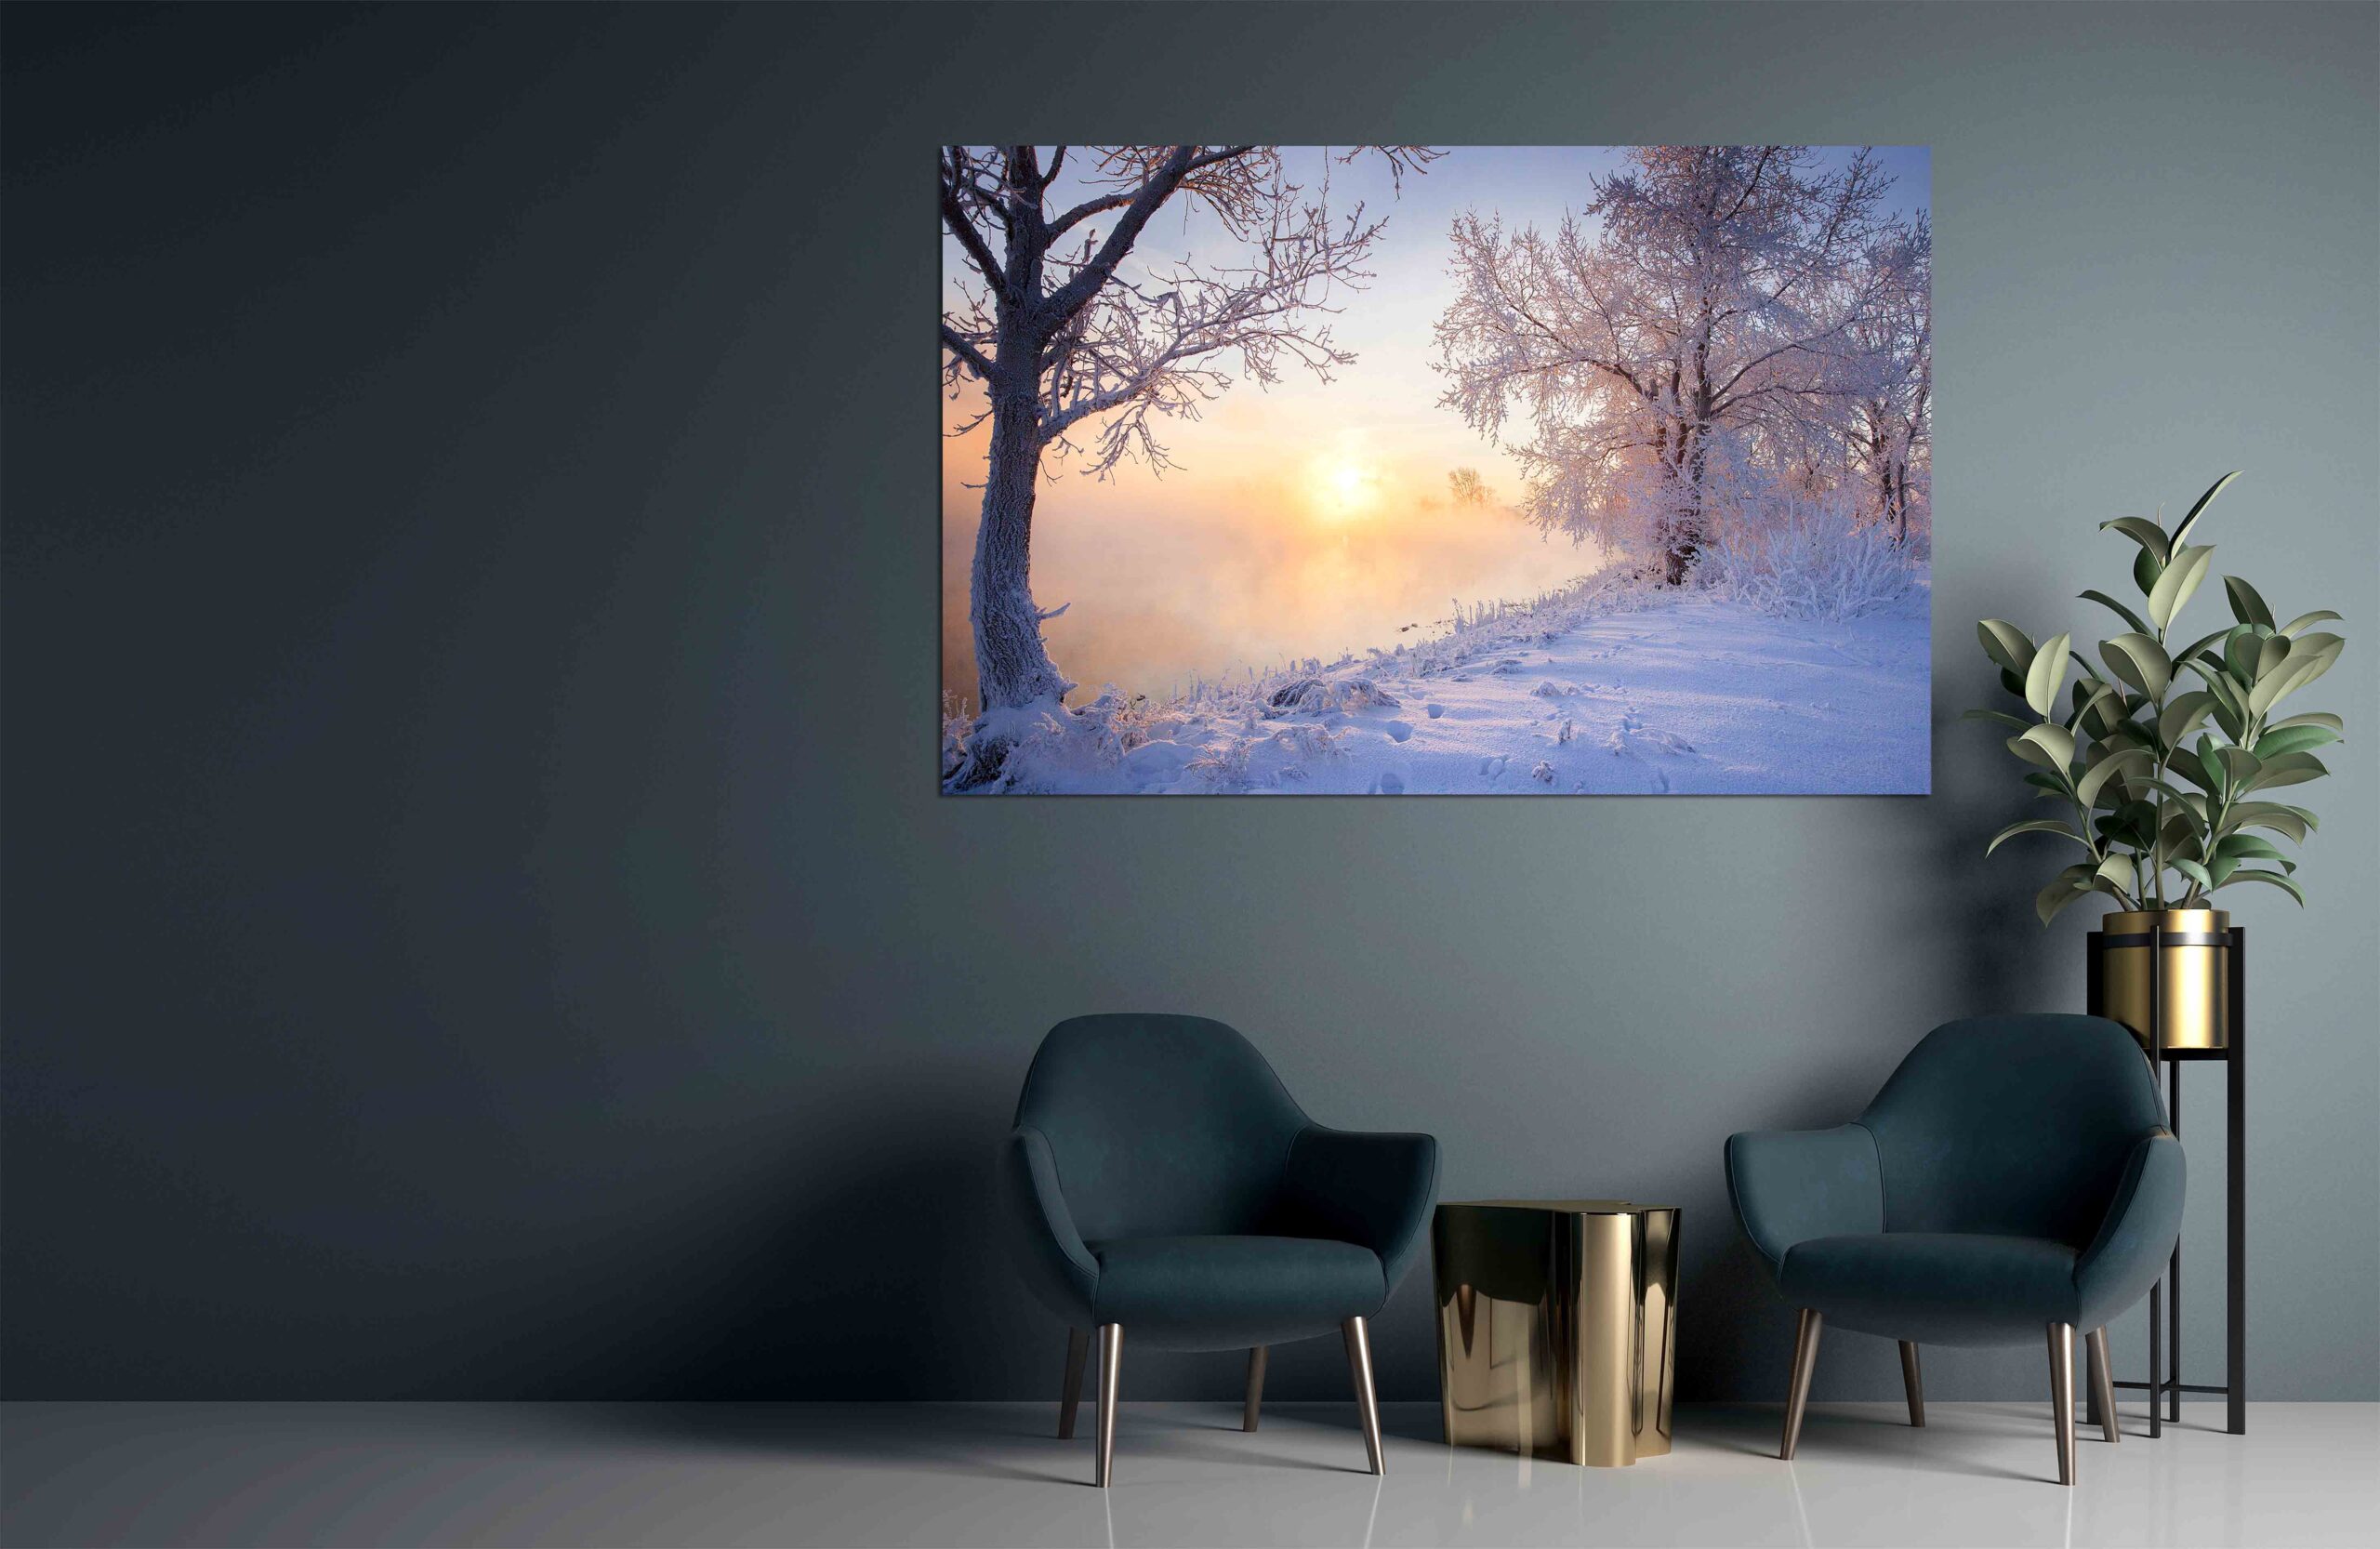 Canvas Print Winter landscape